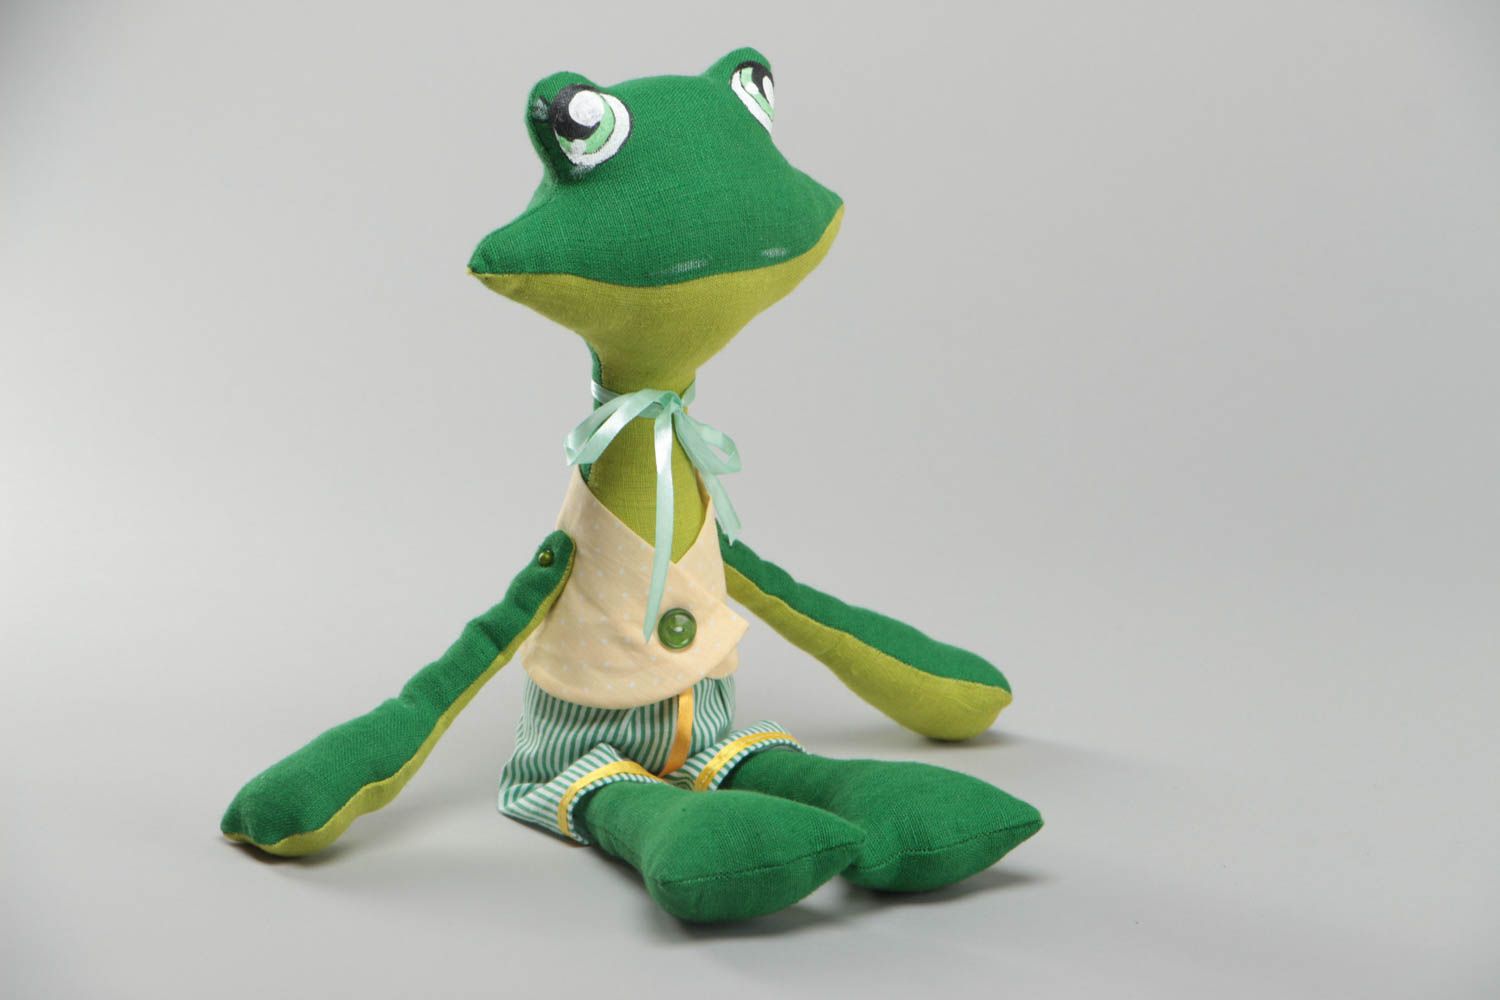 Jouet décoratif en tissu fait main design original peint pour enfant grenouille photo 2